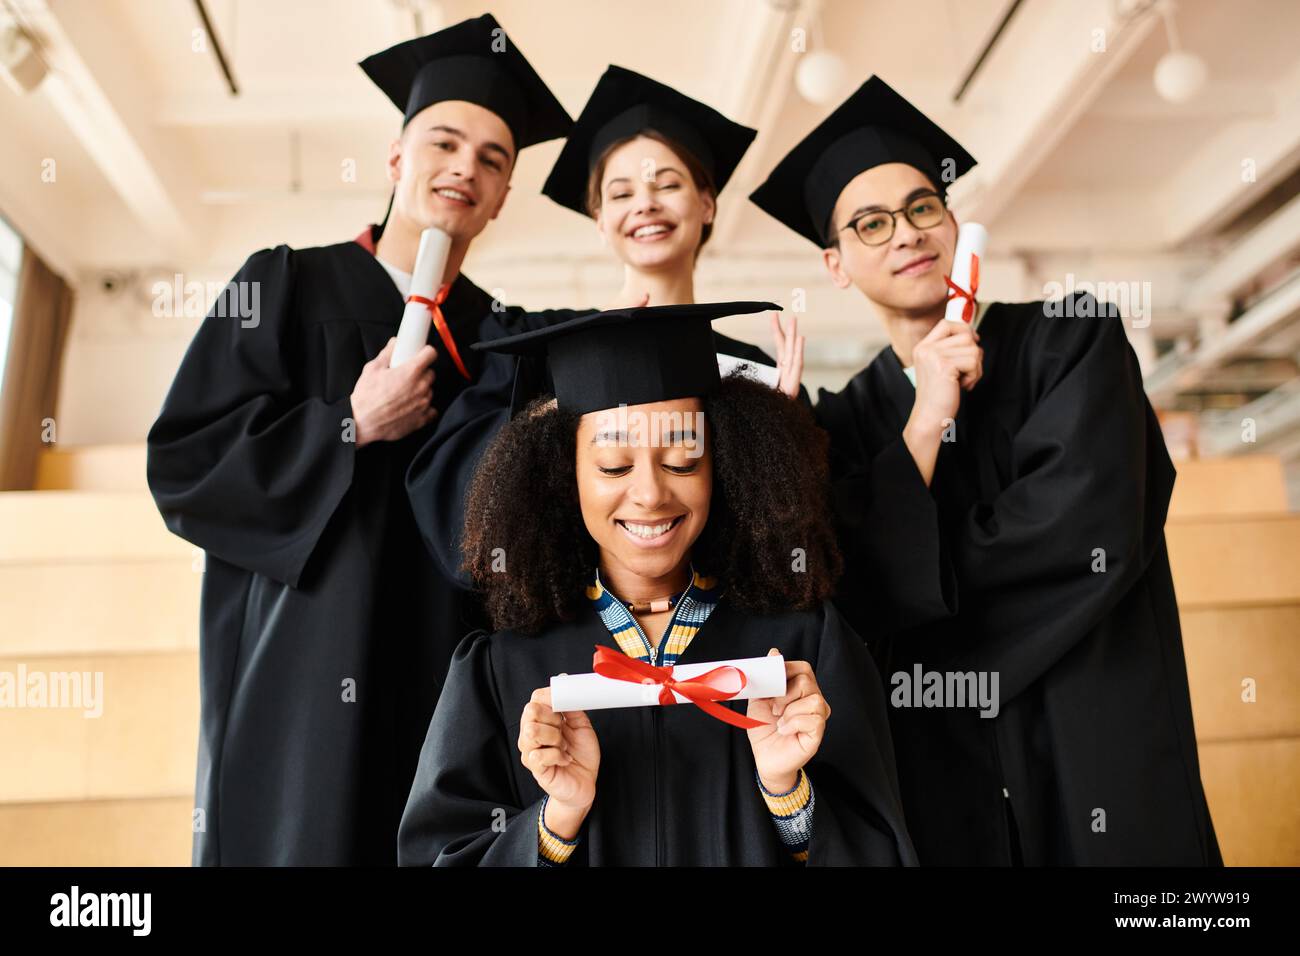 Verschiedene Gruppen fröhlicher Studenten in Abschlusskleidern und -Mützen posieren für ein festliches Bild im Haus. Stockfoto